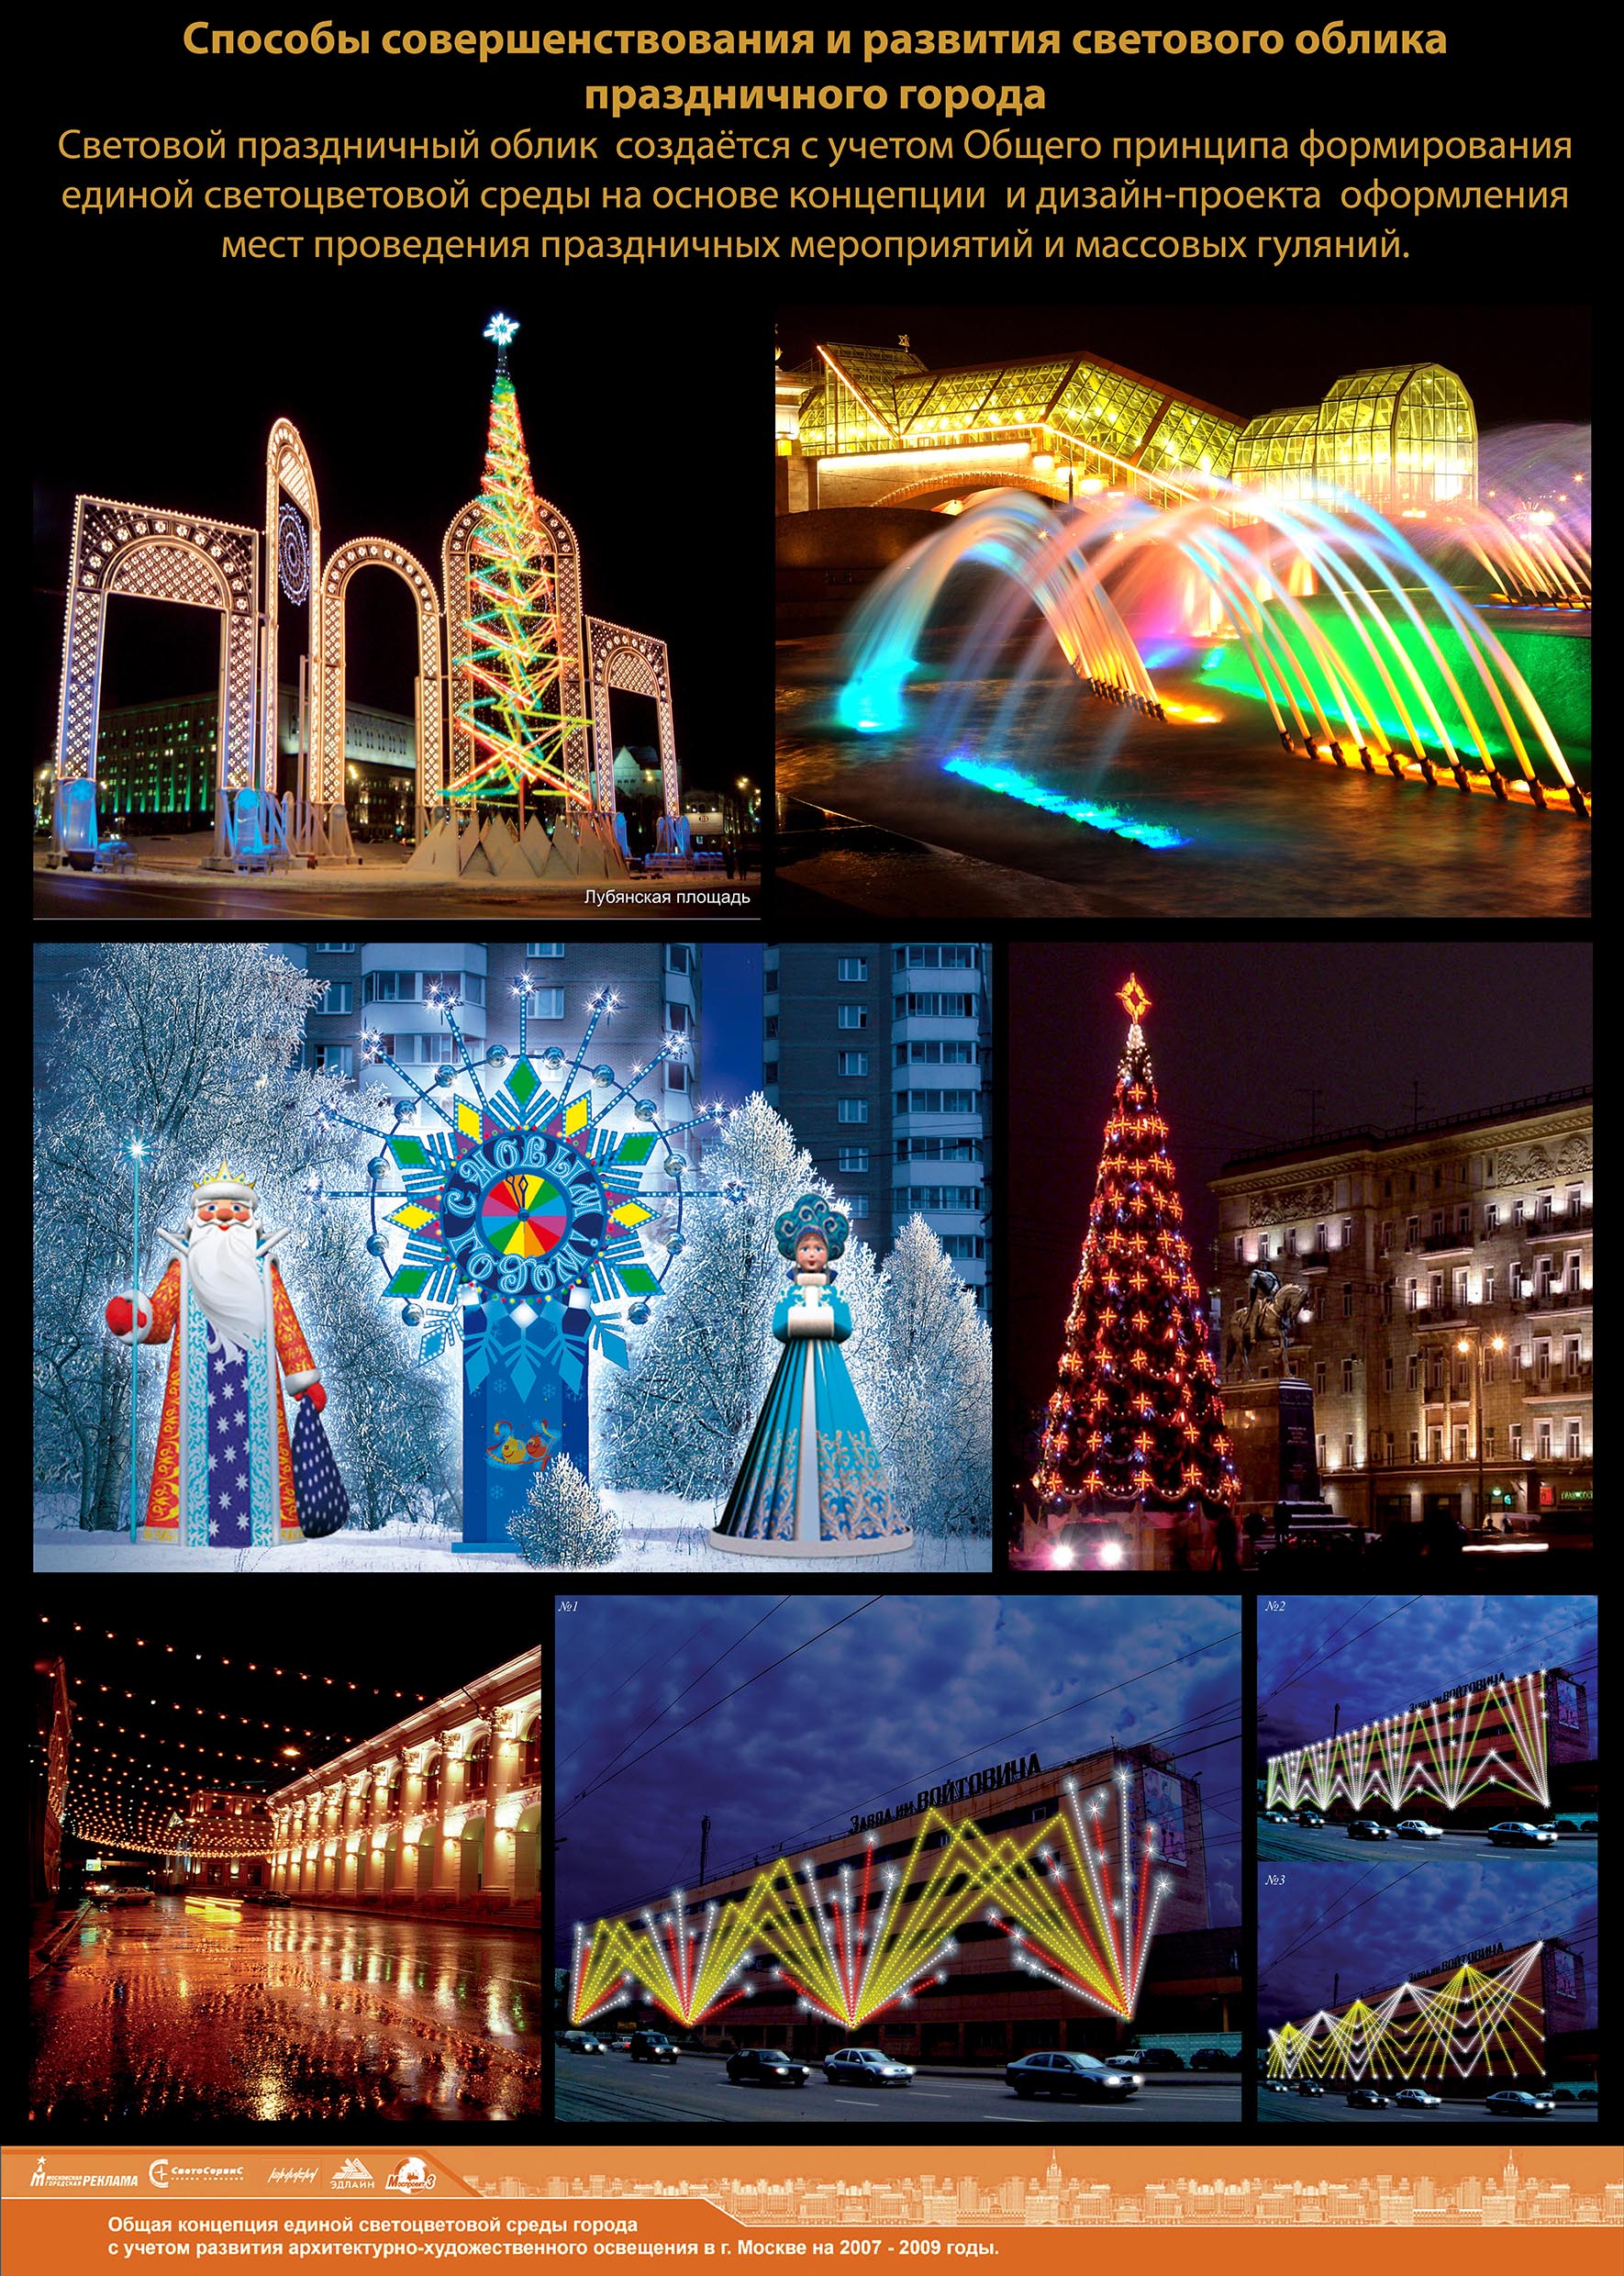 Концепции единой светоцветовой среды города Москвы от 11 ноября 2008 года